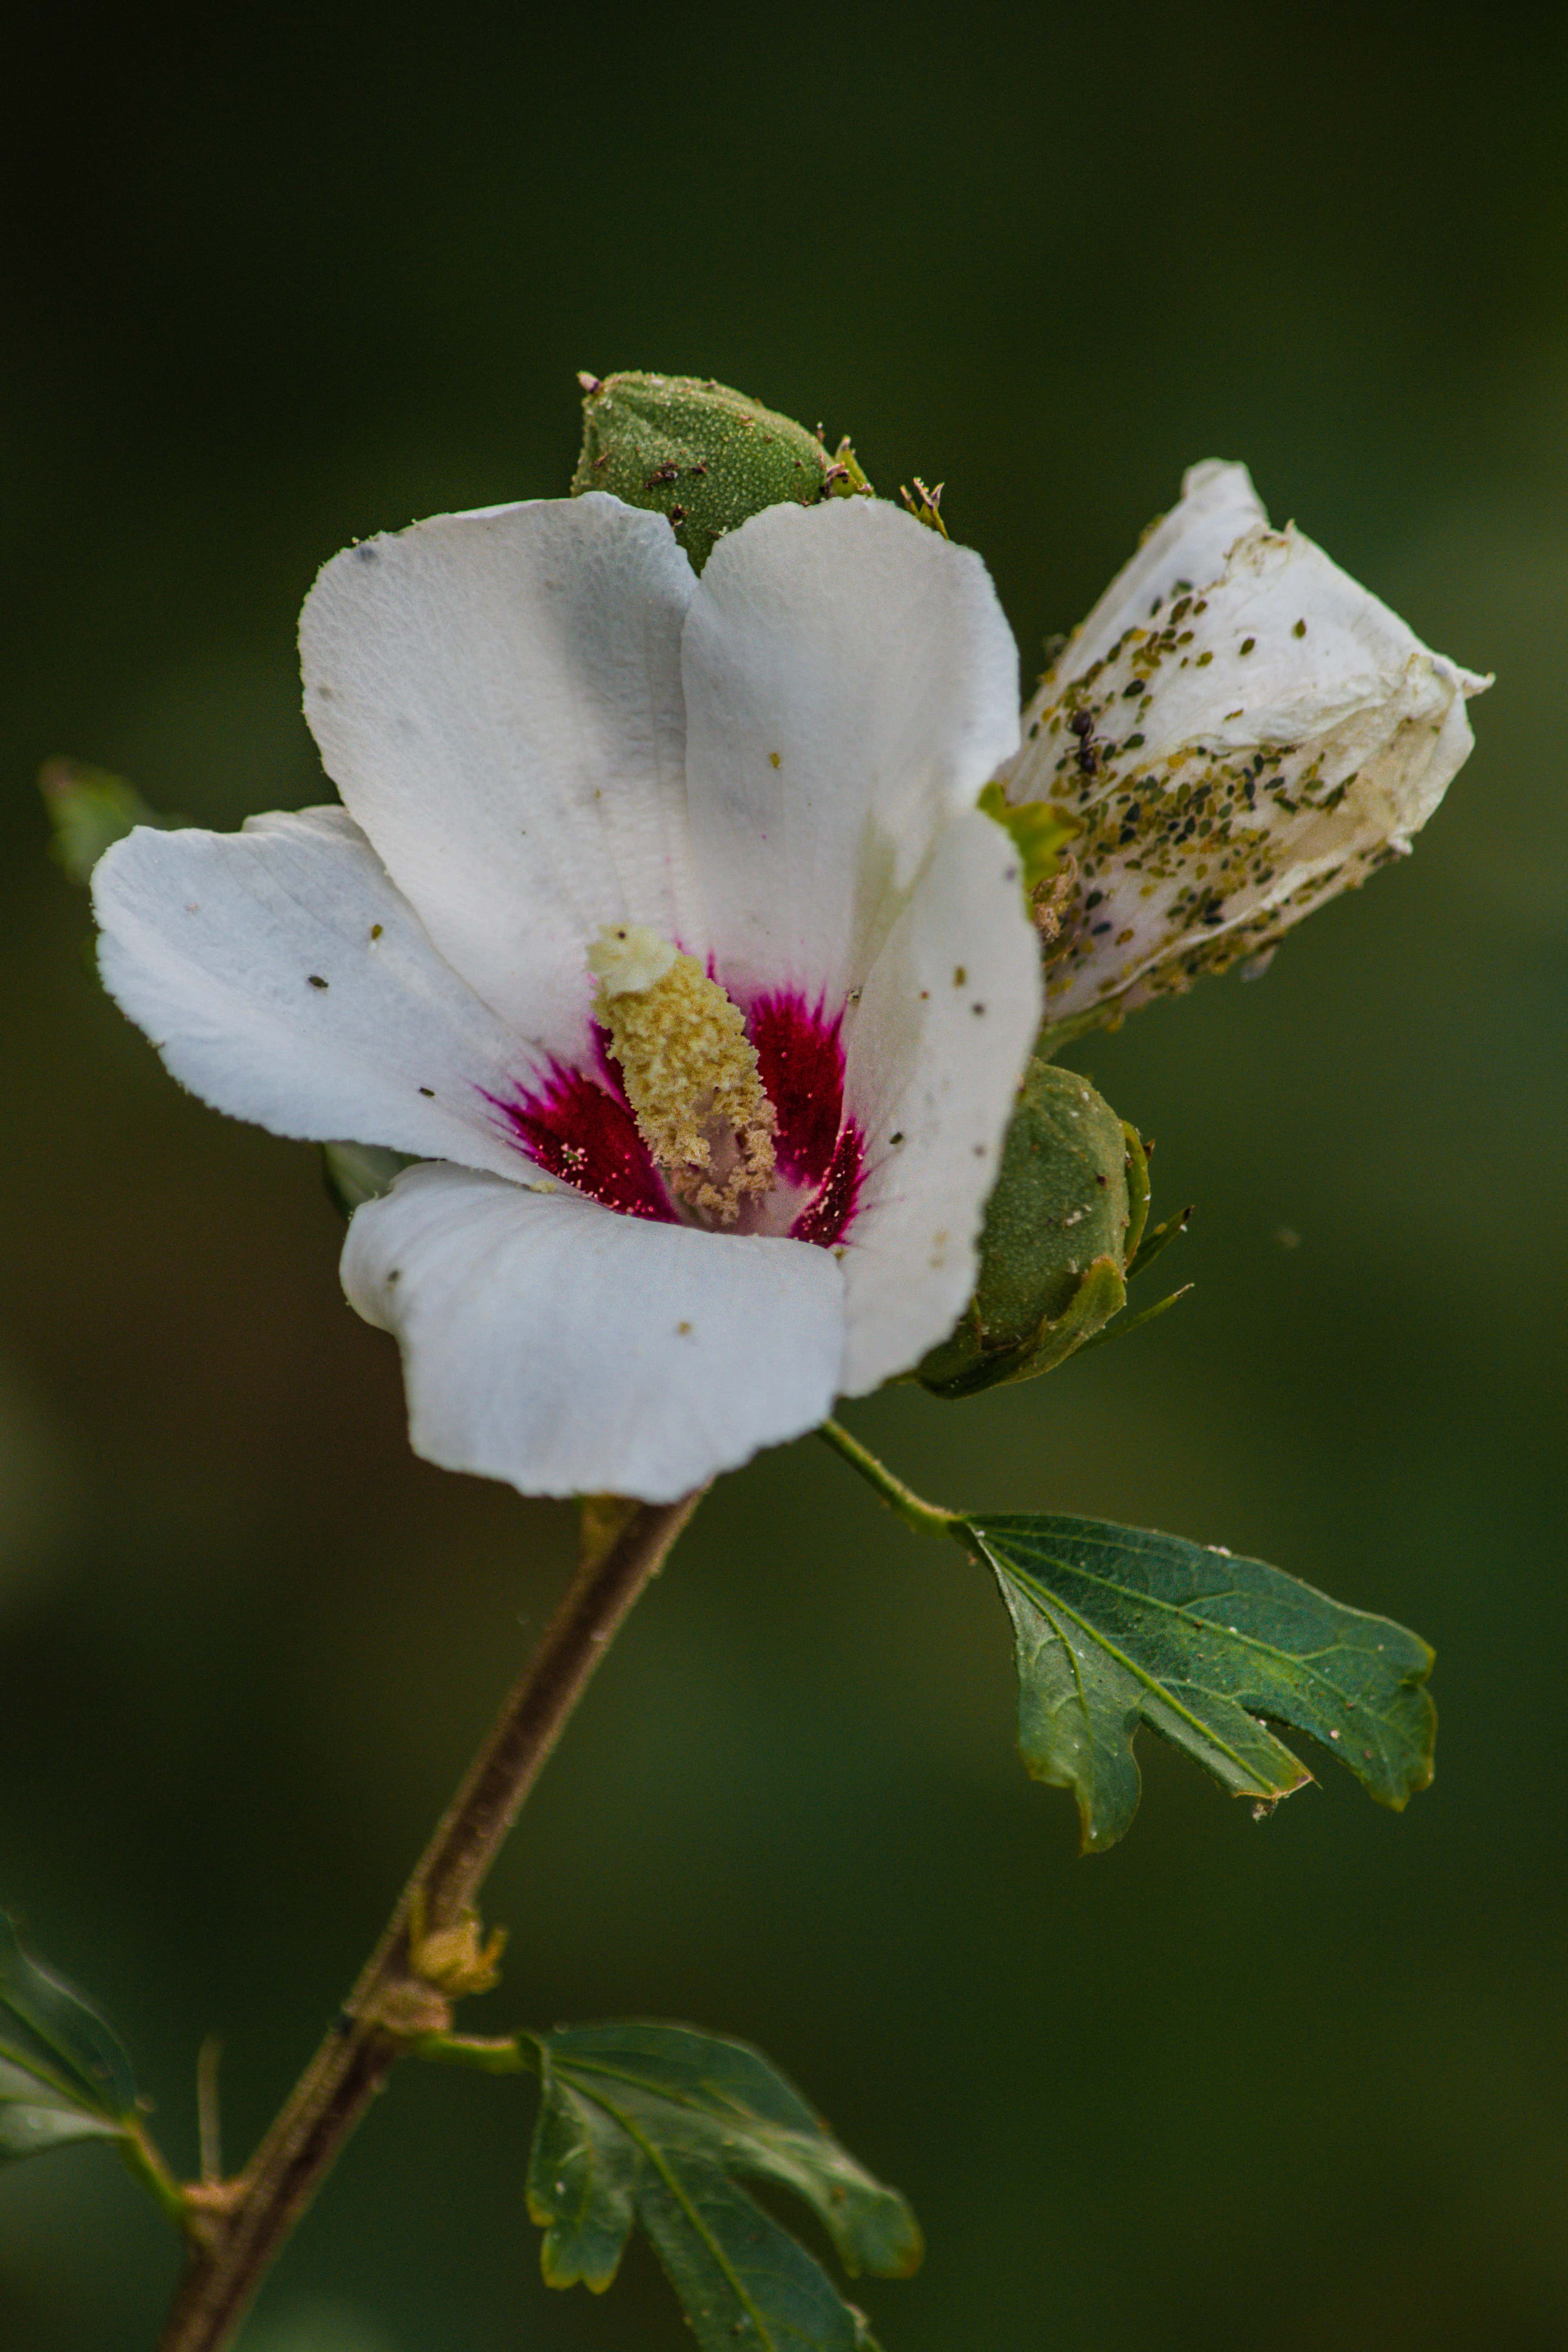 Image libre: fleur blanche, pistil, fermer, pollen, petit, insecte,  punaise, fleur, jardin, pétale